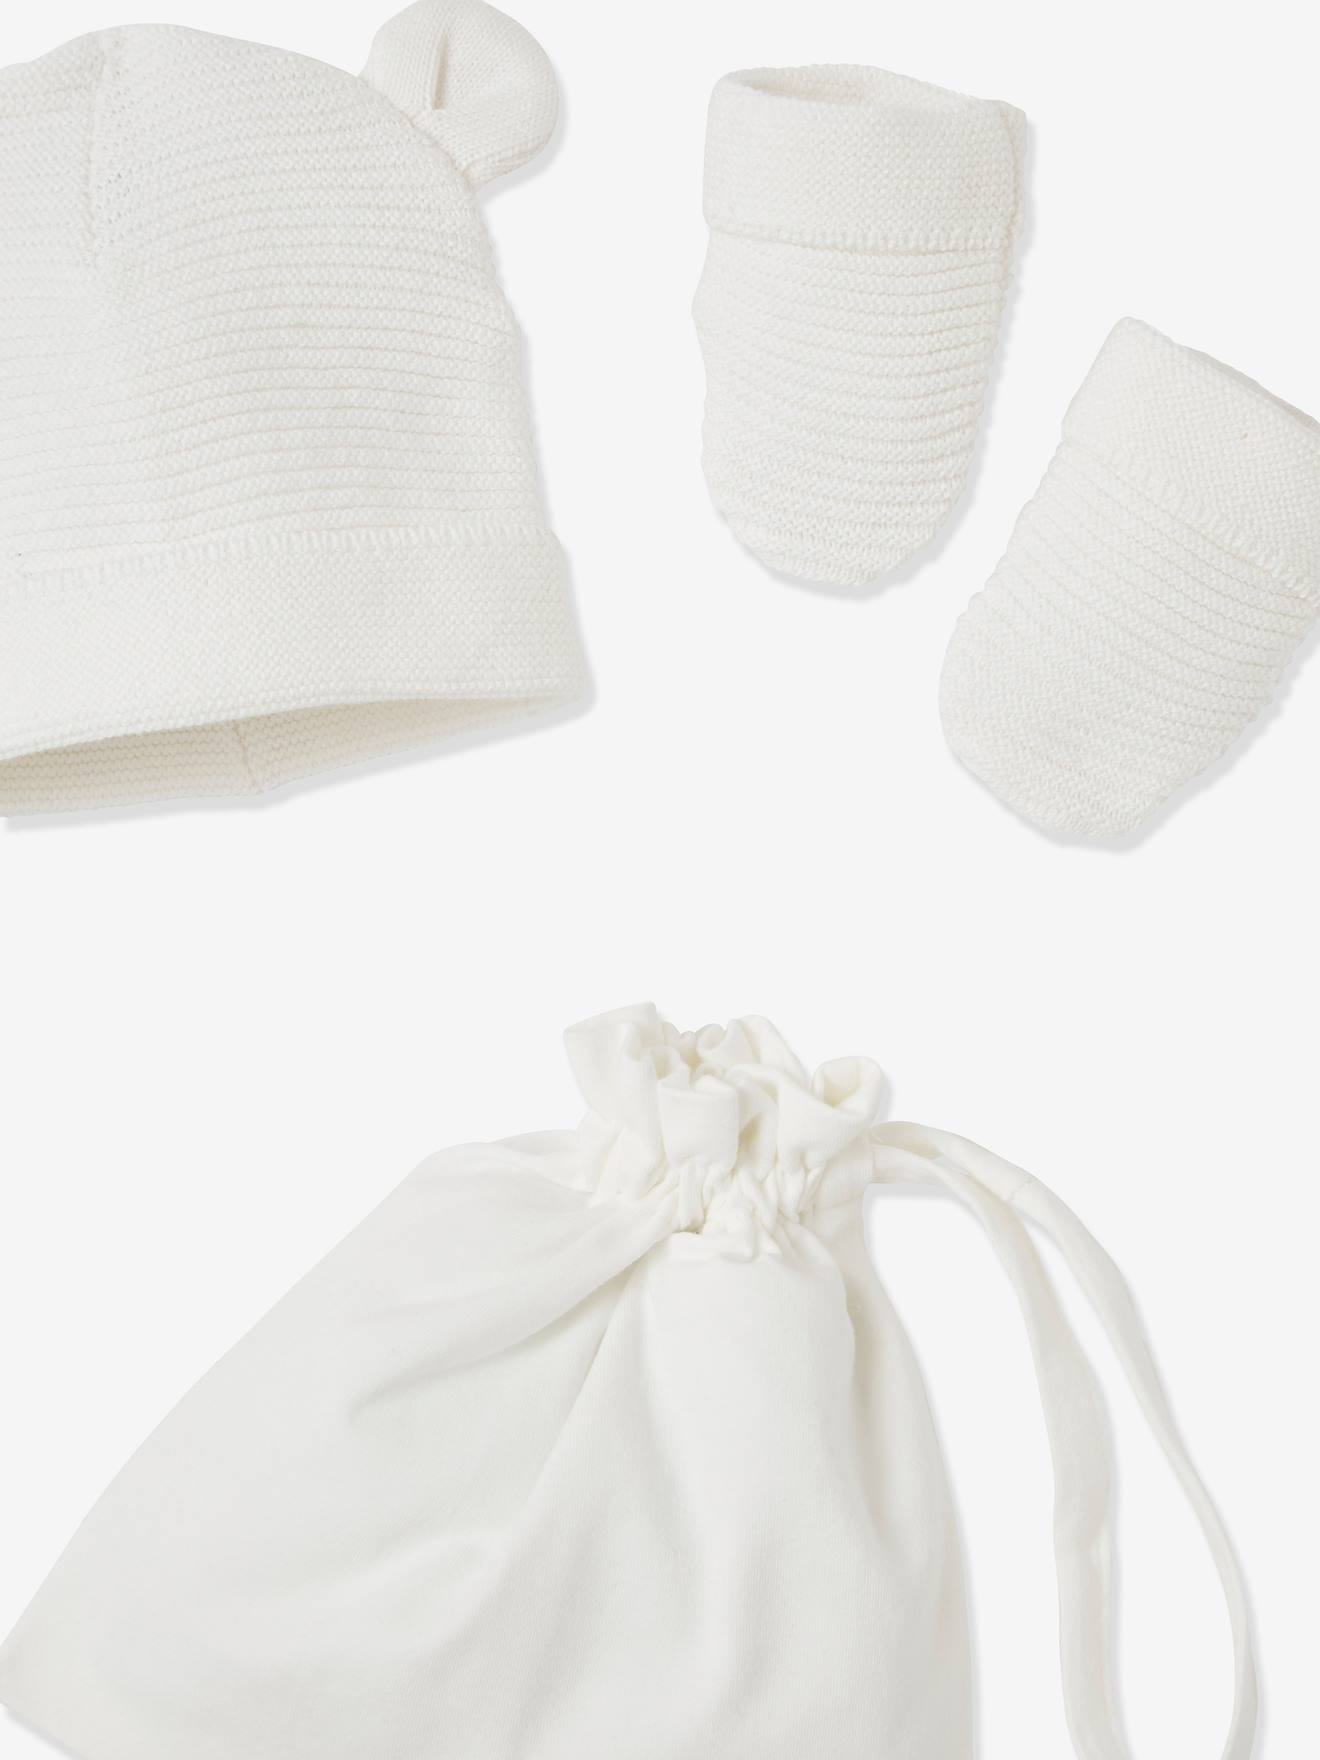 Ensemble naissance bébé brassière, bonnet et chaussons - Blanc - Made in  Bébé